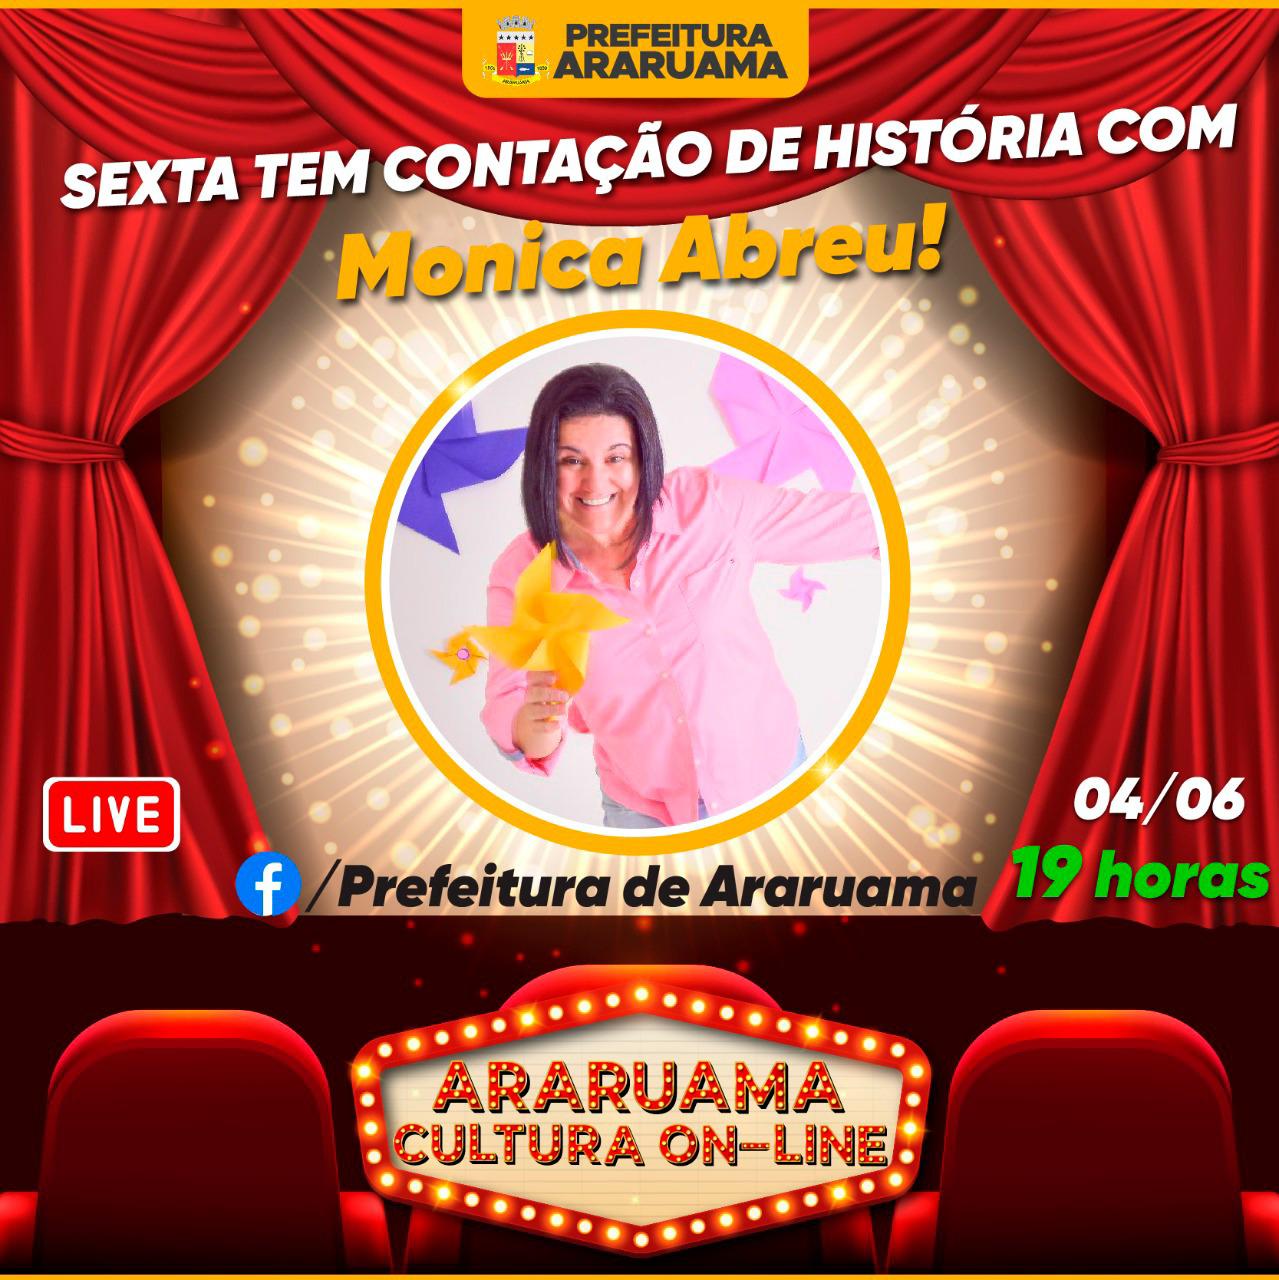 Monica Abreu se apresenta nessa sexta-feira no “Araruama Cultura On-line”